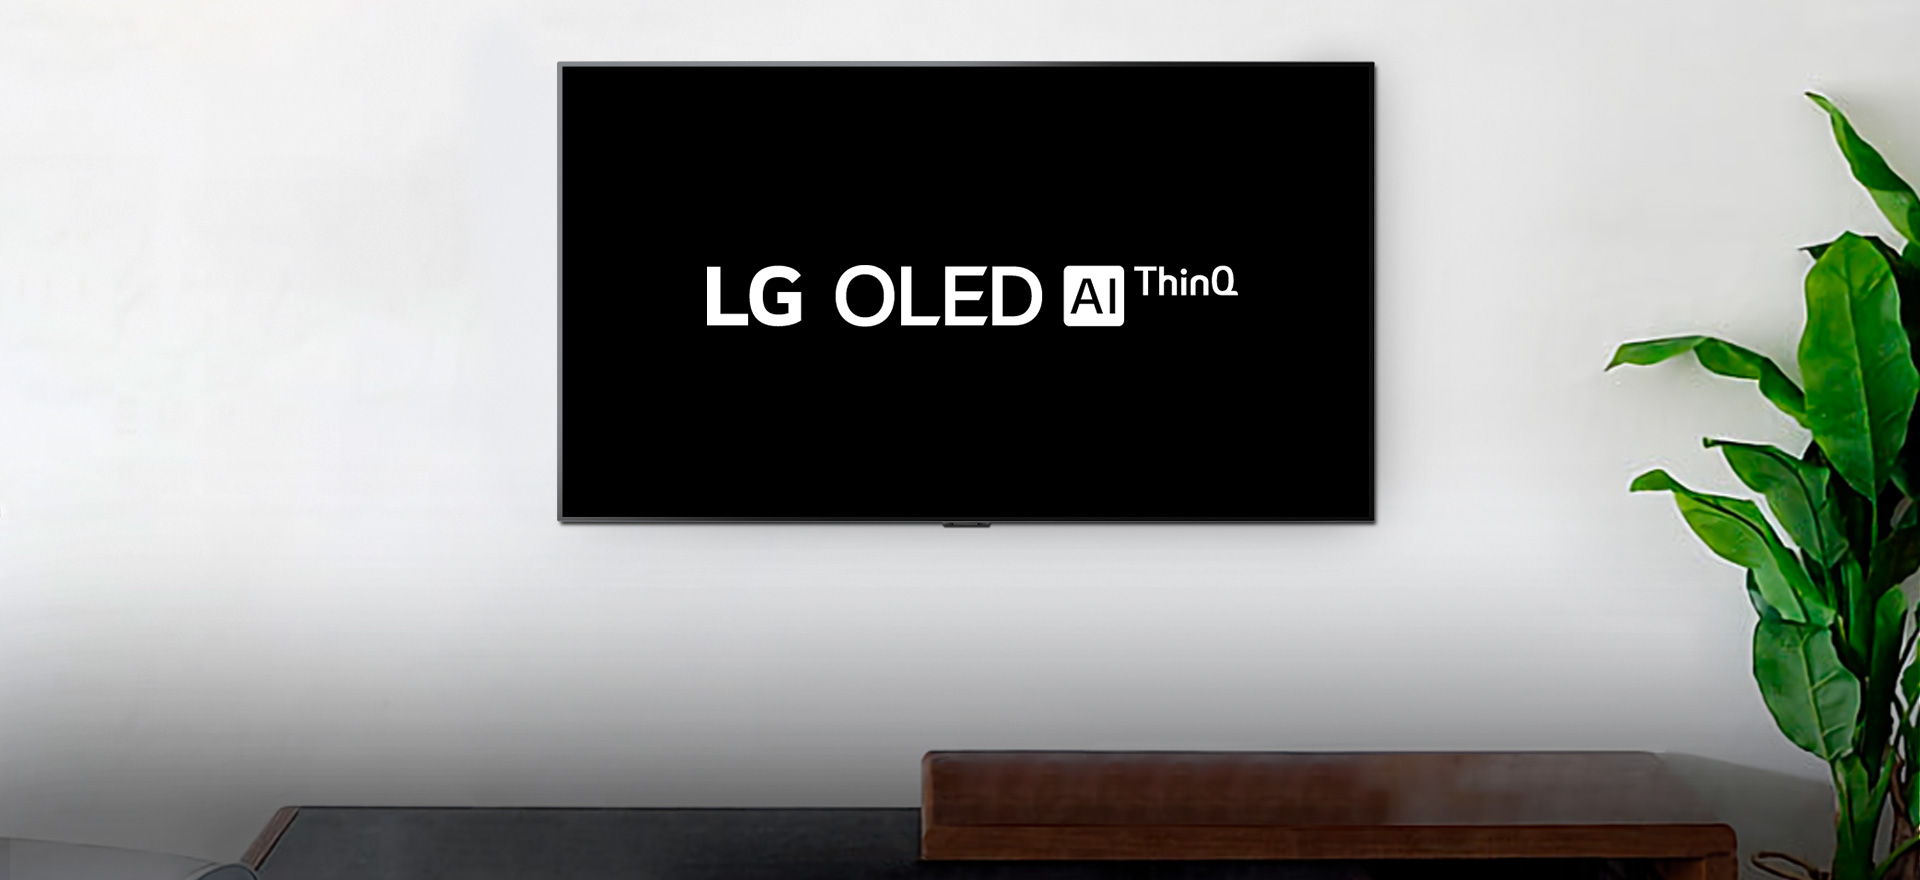 Zamontowany na ścianie telewizor z wyświetlonym logo LG OLED AI ThinQ na czarnym tle